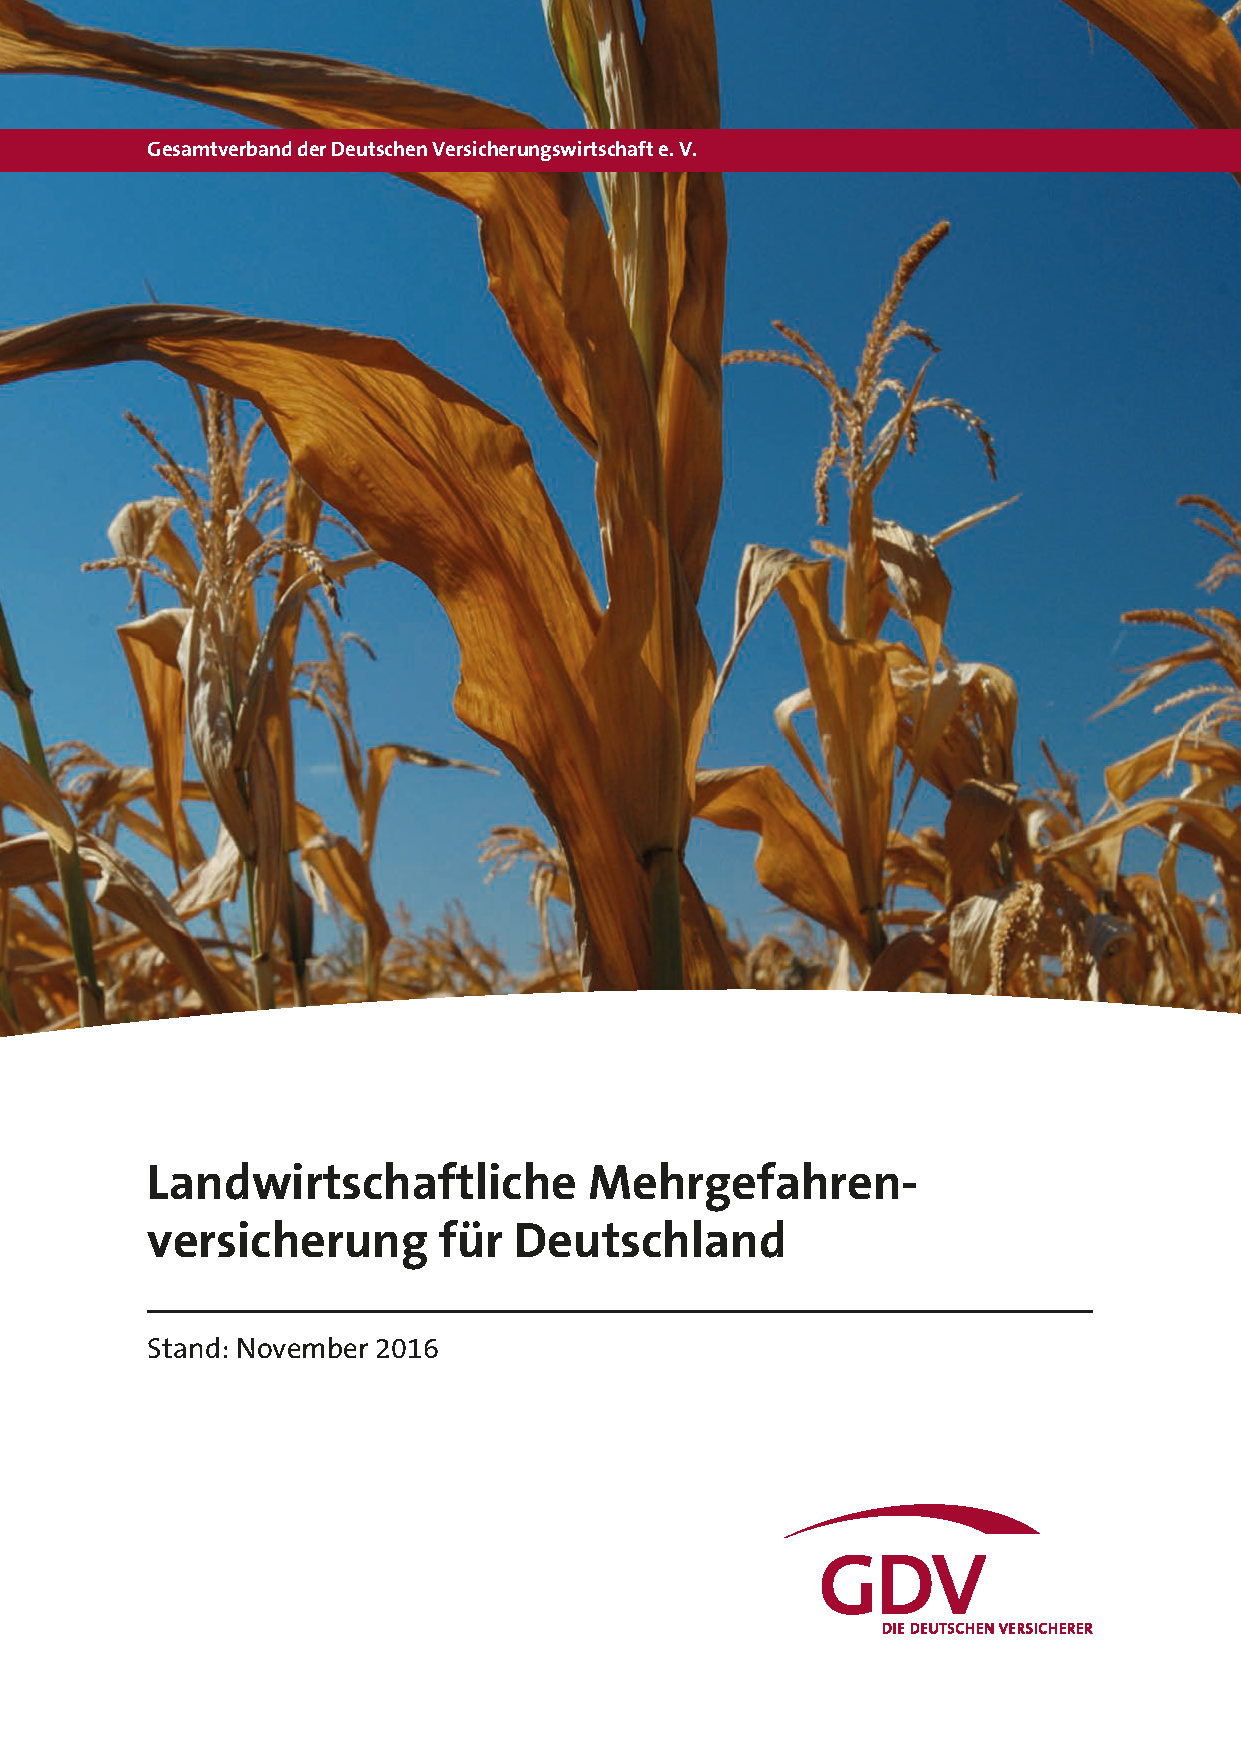 Landwirtschaftliche Mehrgefahrenversicherung für Deutschland November 2016 GDV